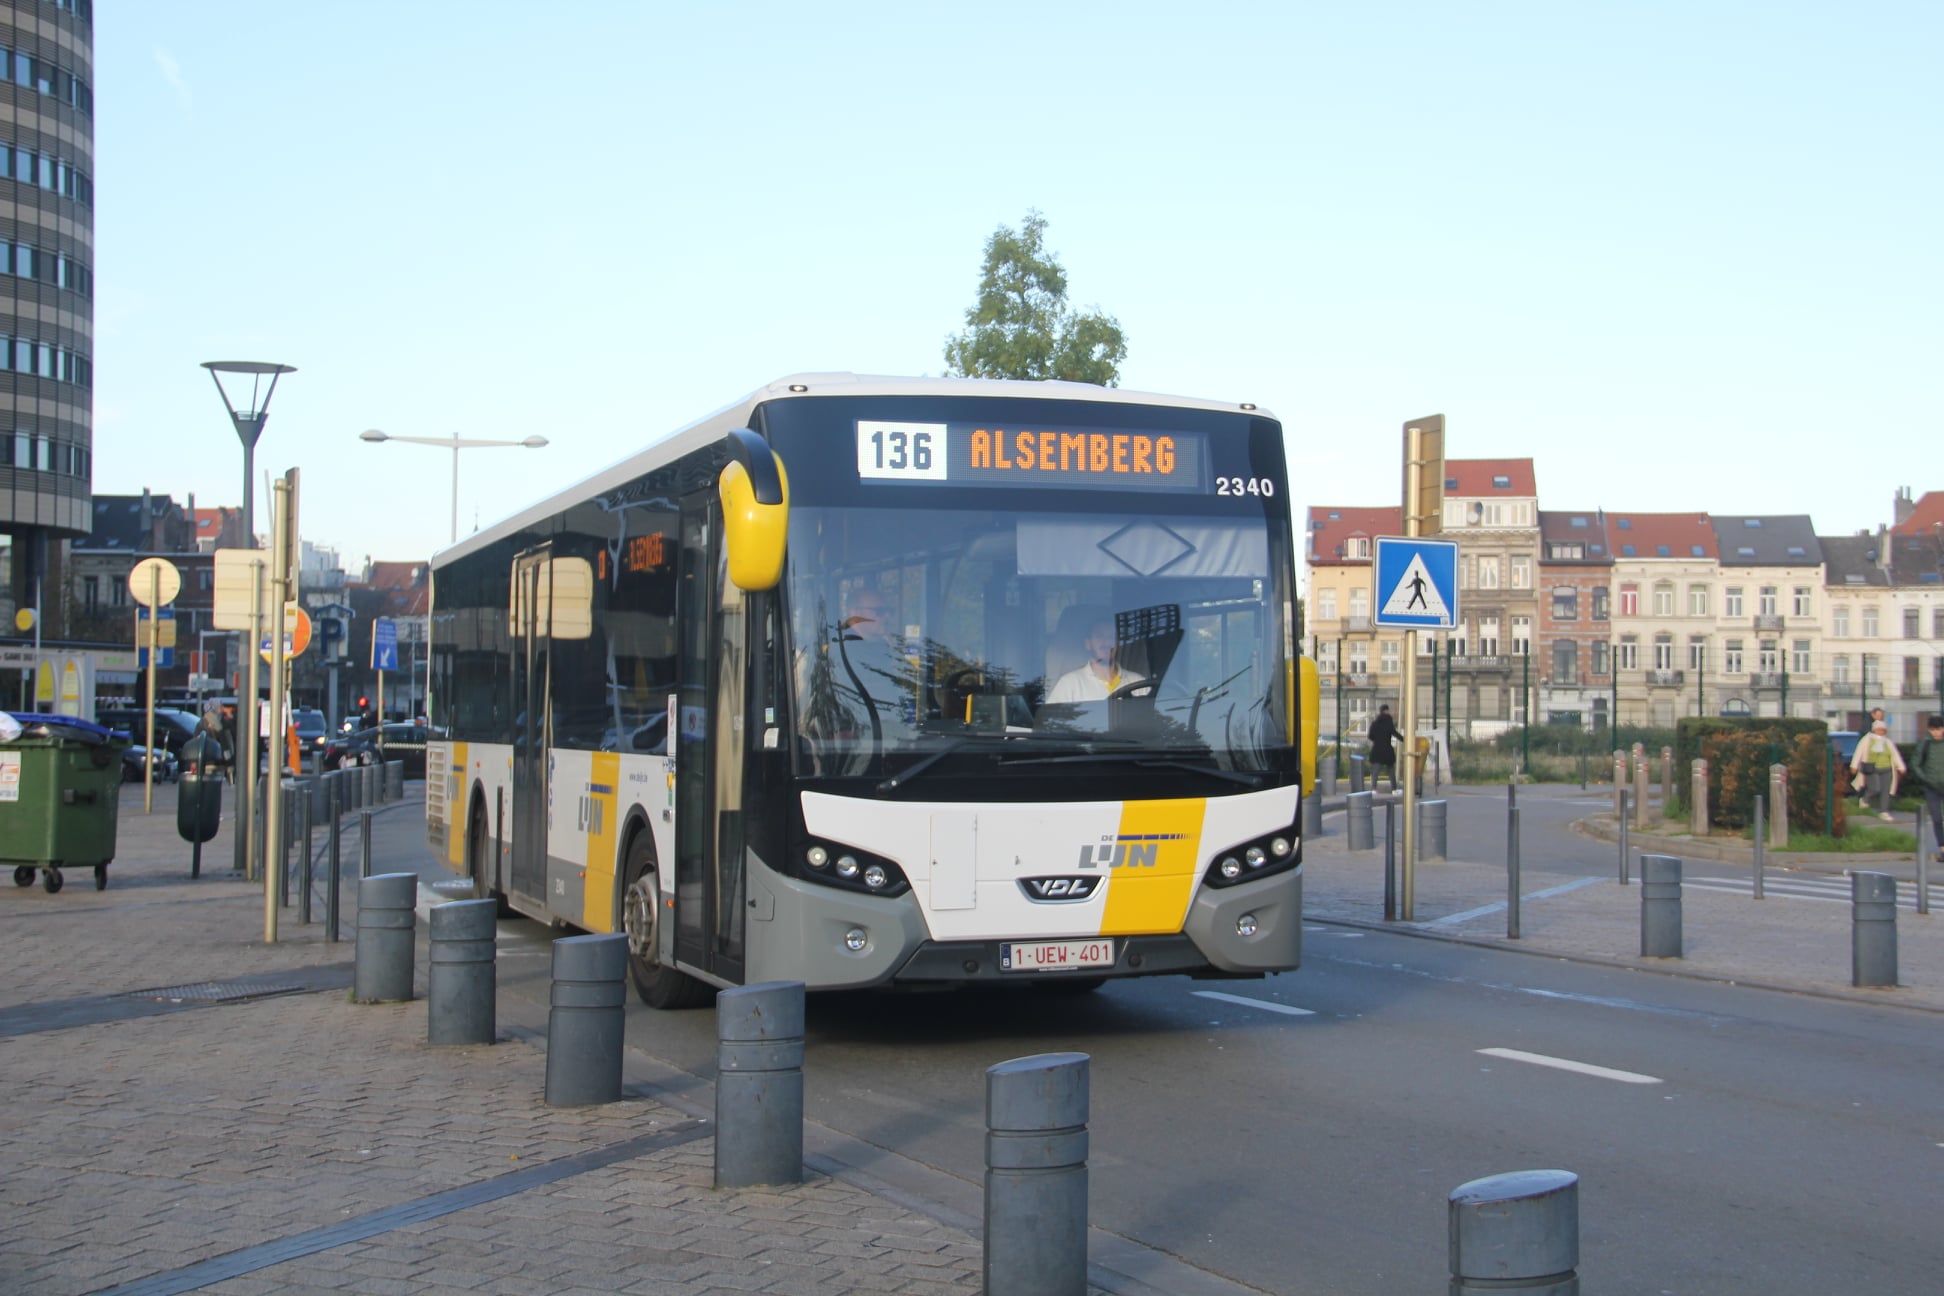 De Lijn on Twitter: "#VlaamsBrabant #Bus137 Aanpassing: vanaf deze week 137 op in lijn 136, die vrijwel dezelfde route volgt. 👉 De ritten en de reisweg van lijn